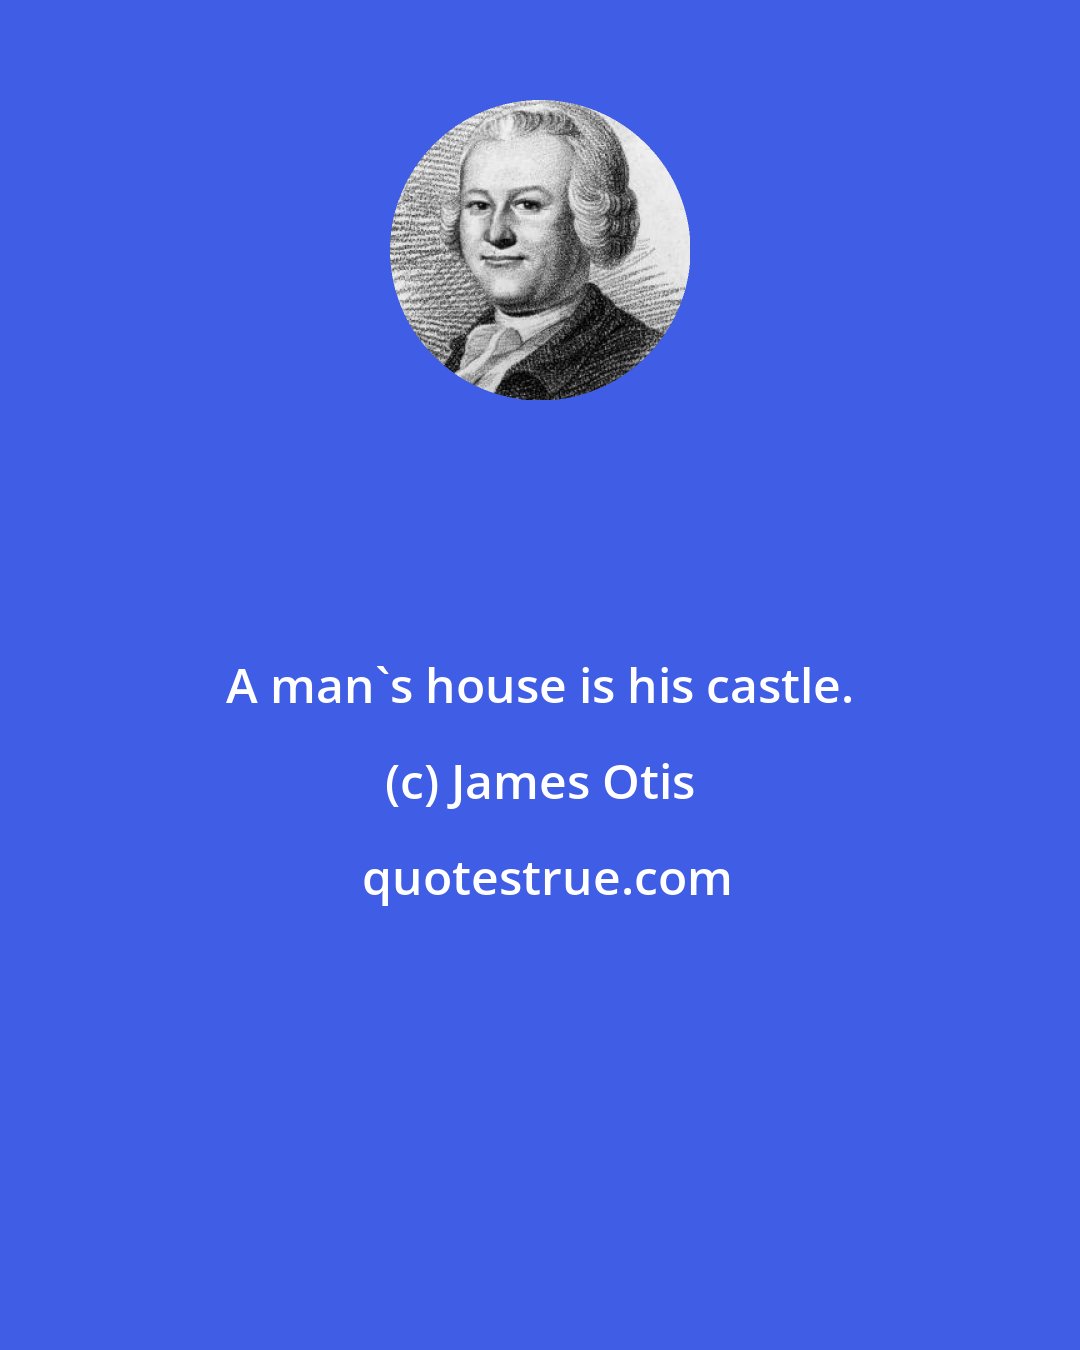 James Otis: A man's house is his castle.